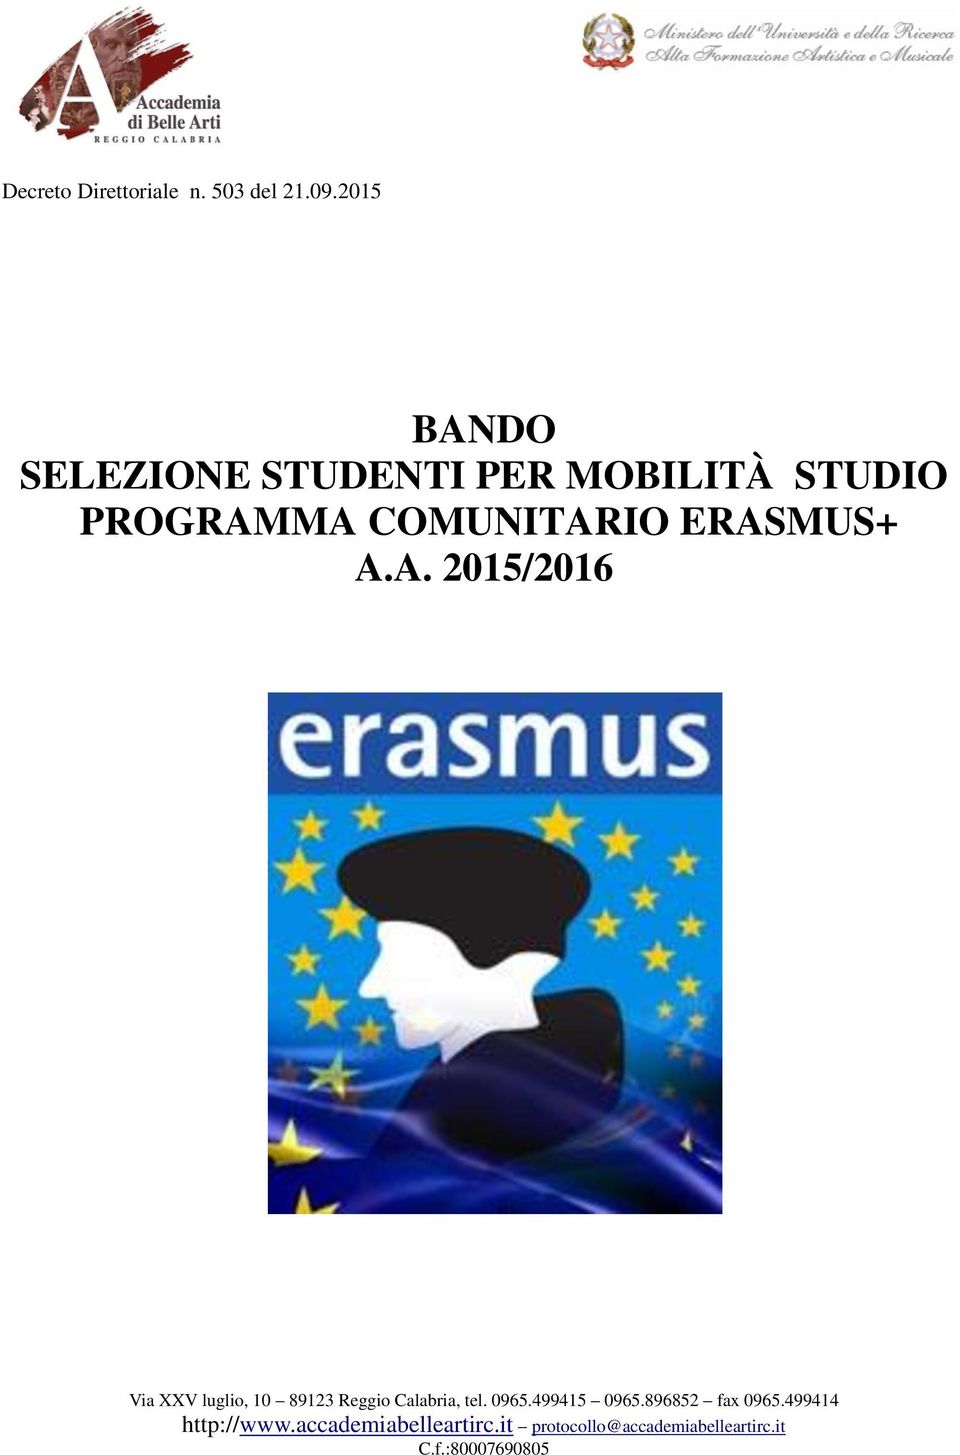 2015 BANDO SELEZIONE STUDENTI PER